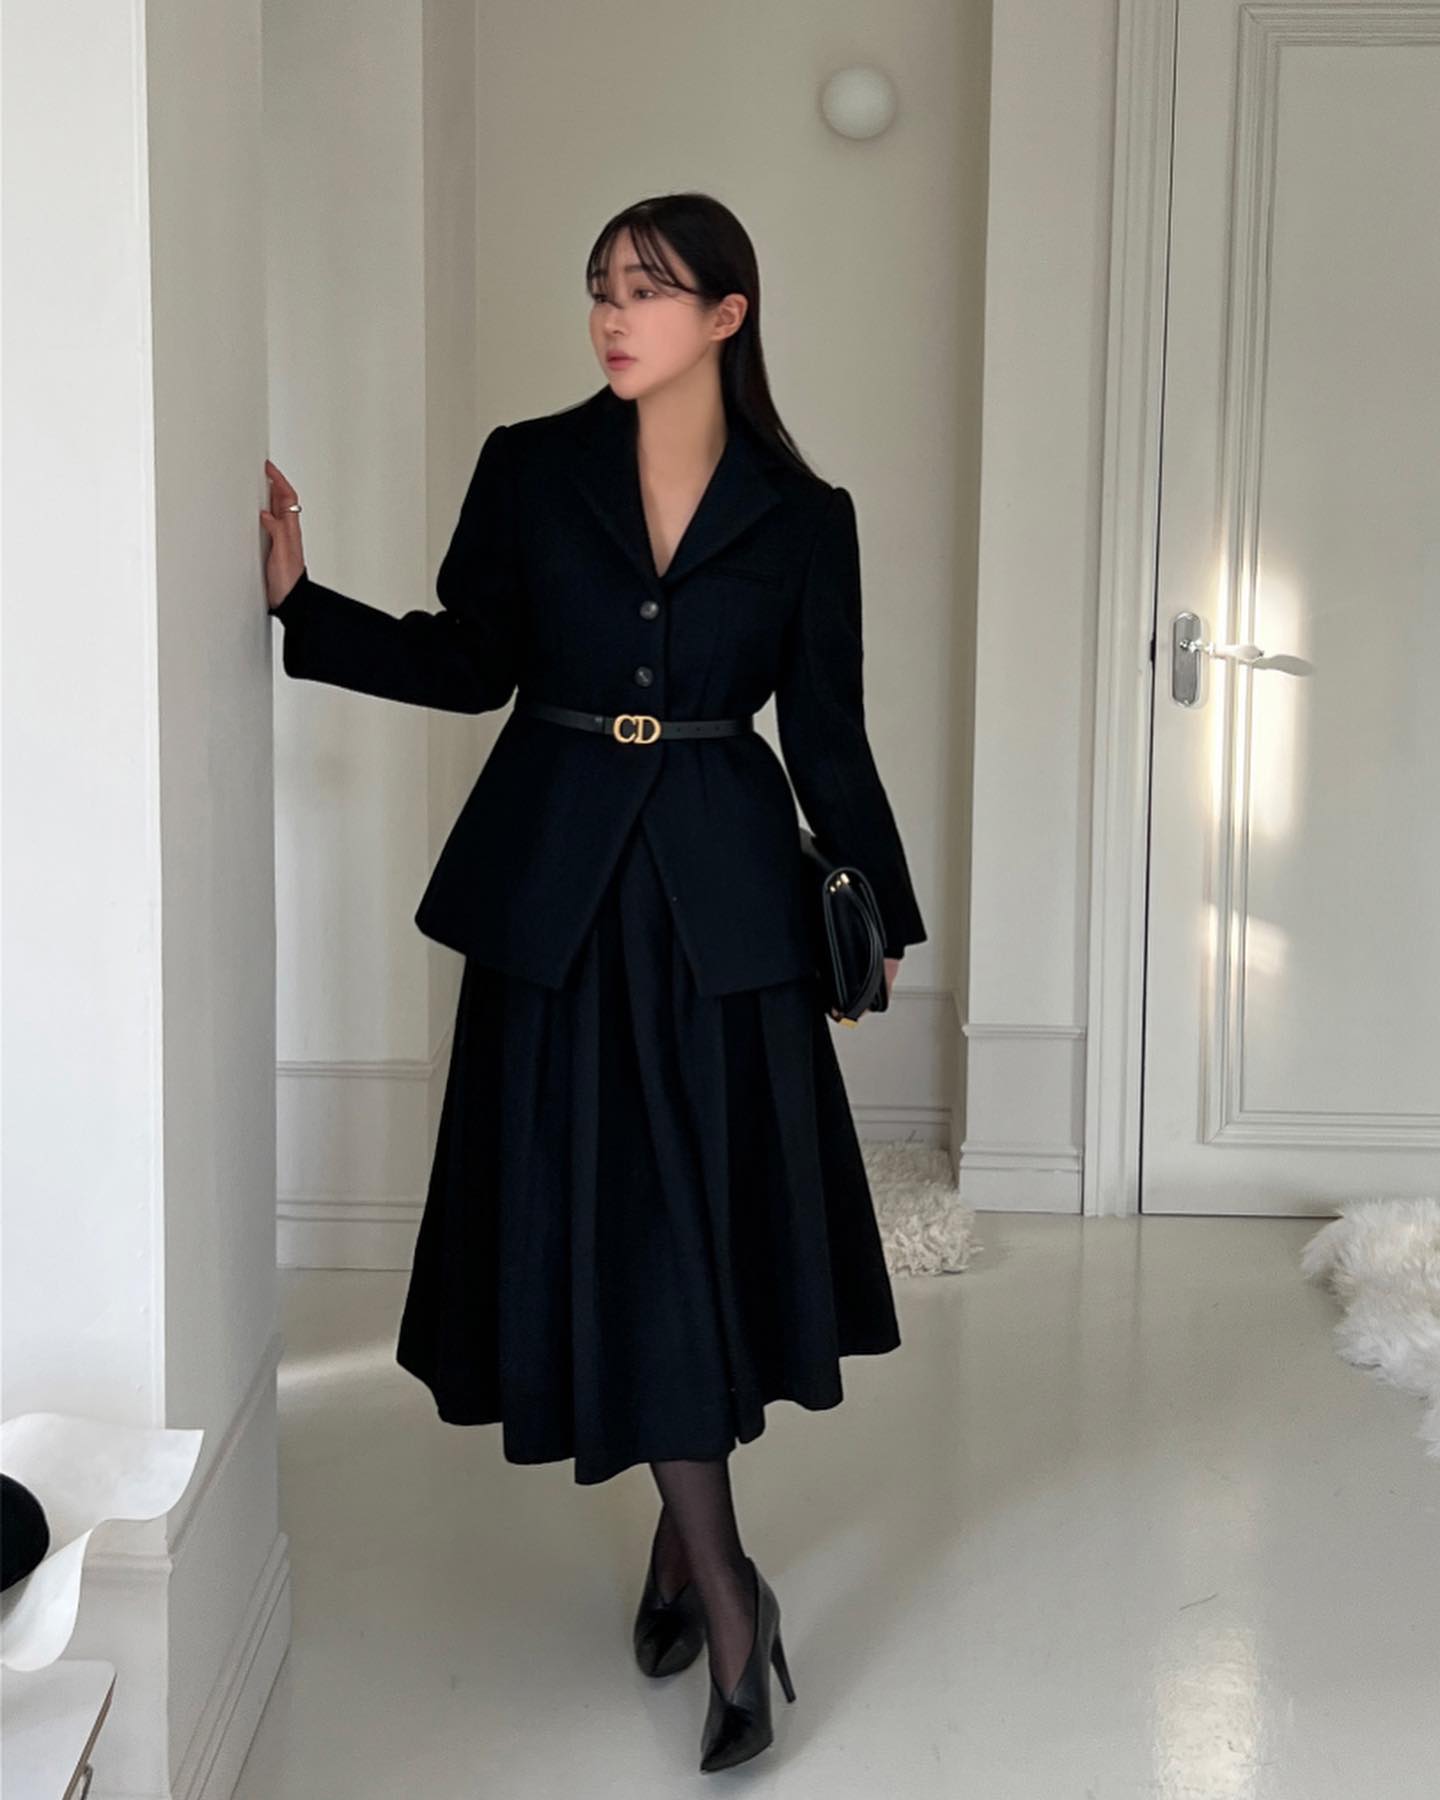 Gợi ý 11 cách diện váy + blazer dễ áp dụng, để chị em đi chơi lễ | Tin tức  Online